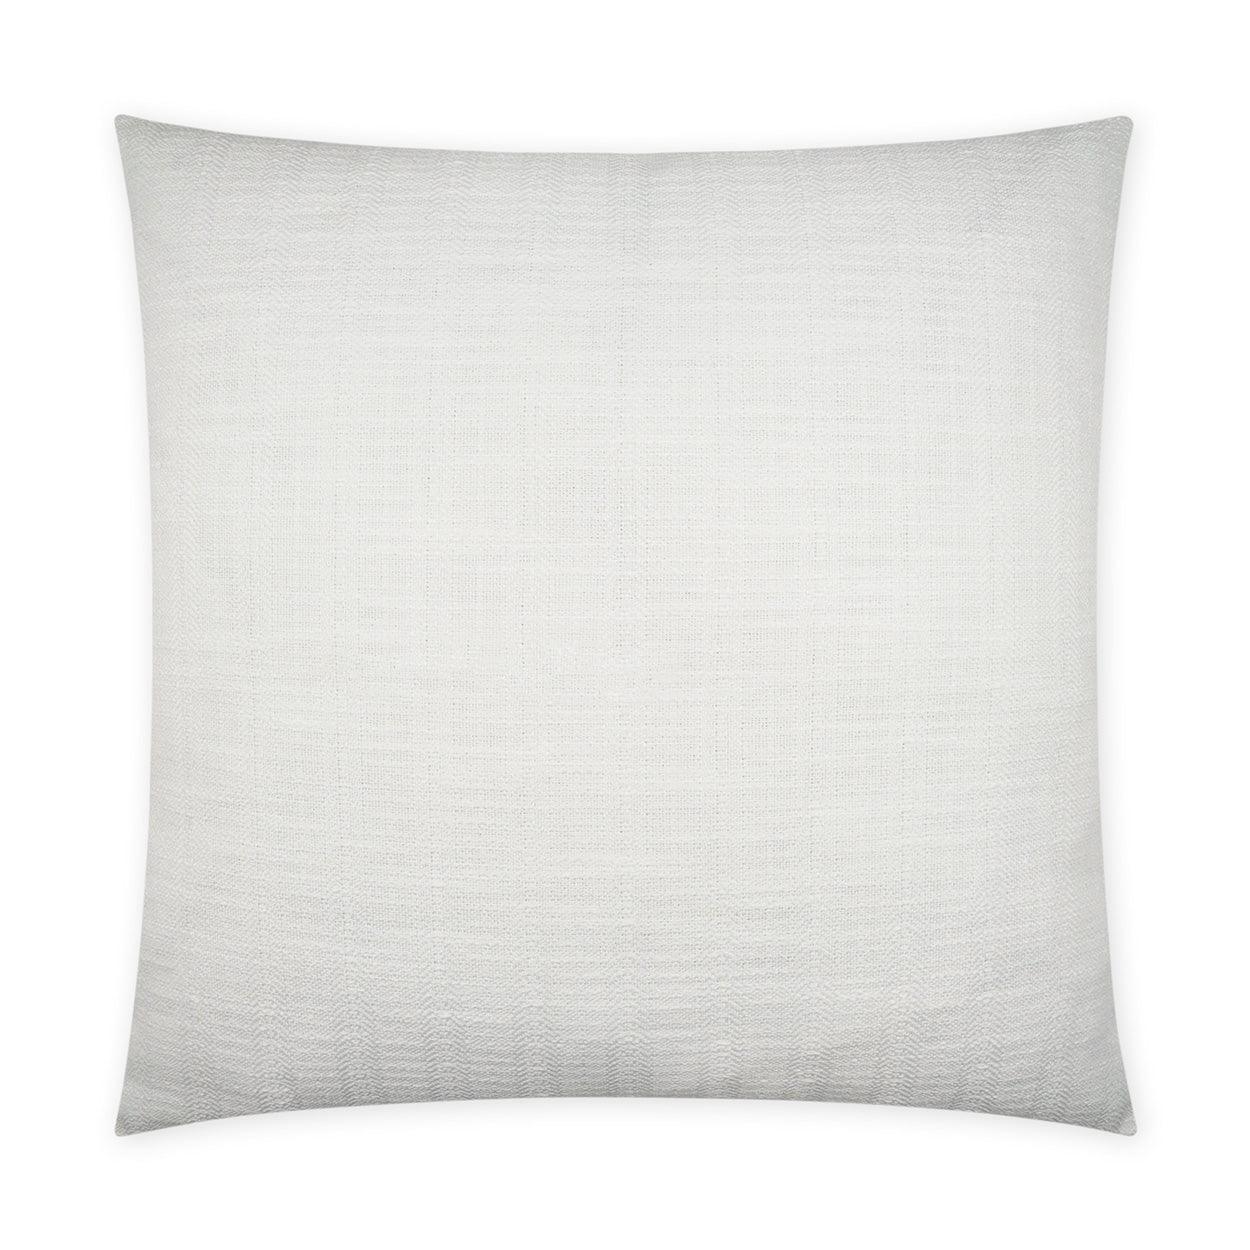 LOOMLAN Outdoor - Outdoor Ashmolton Pillow - White - Outdoor Pillows